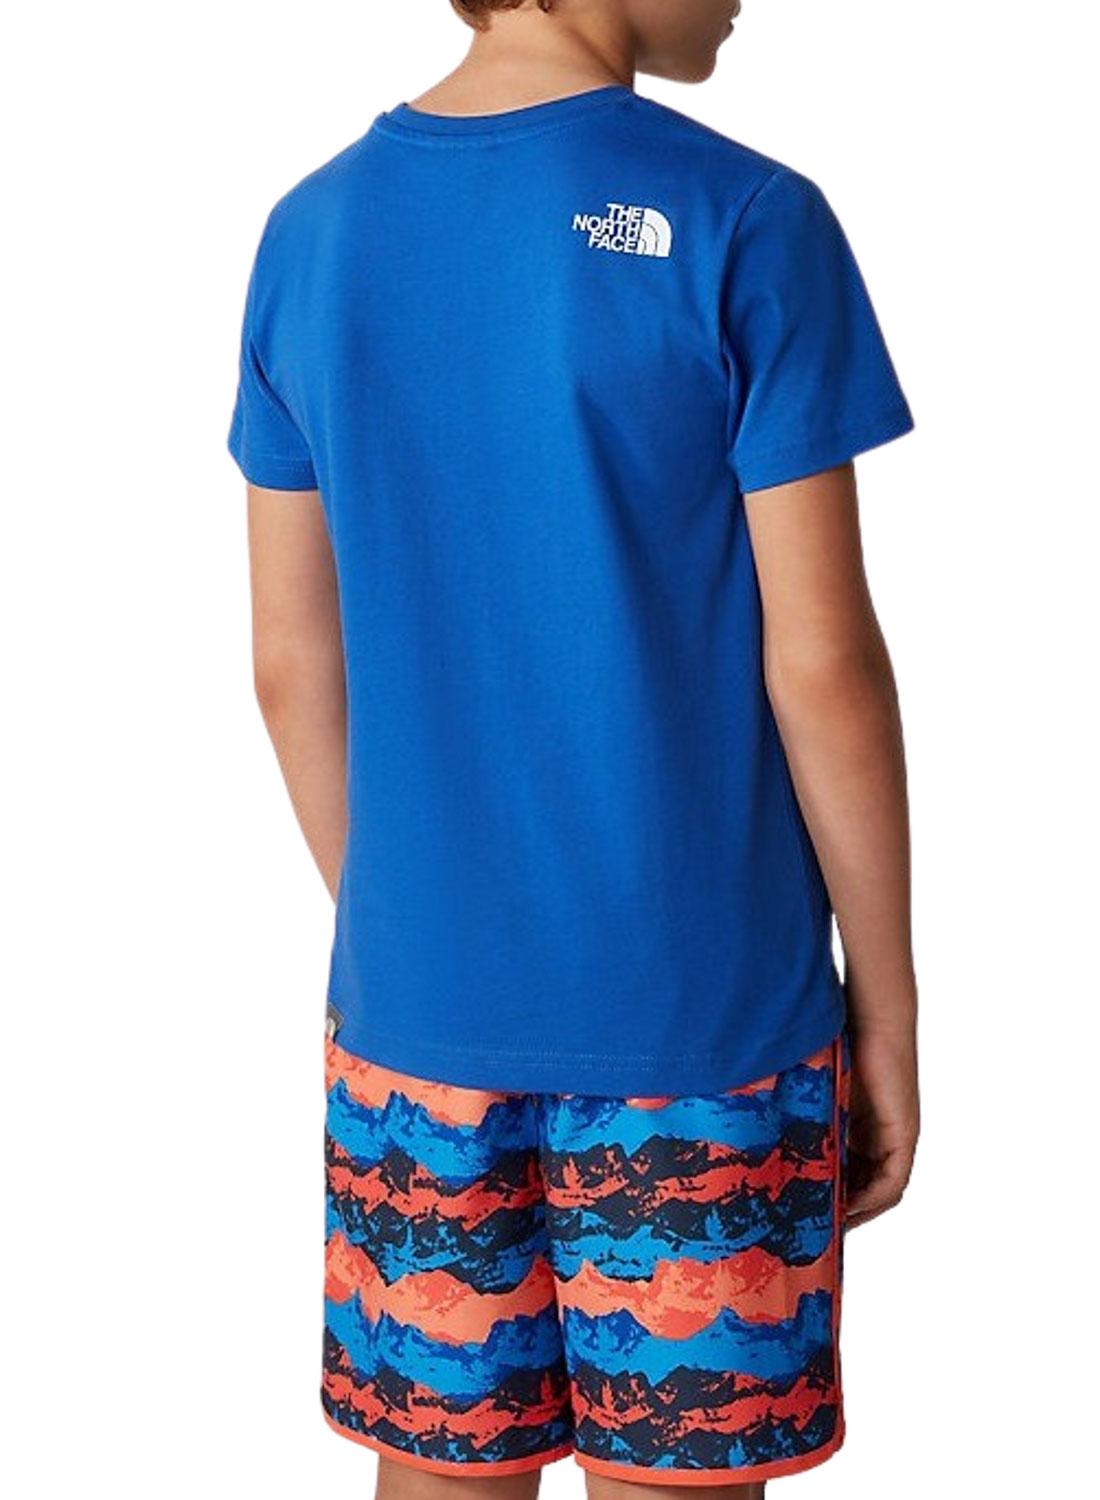 T-Shirt The North Face Explore Blu per Bambino